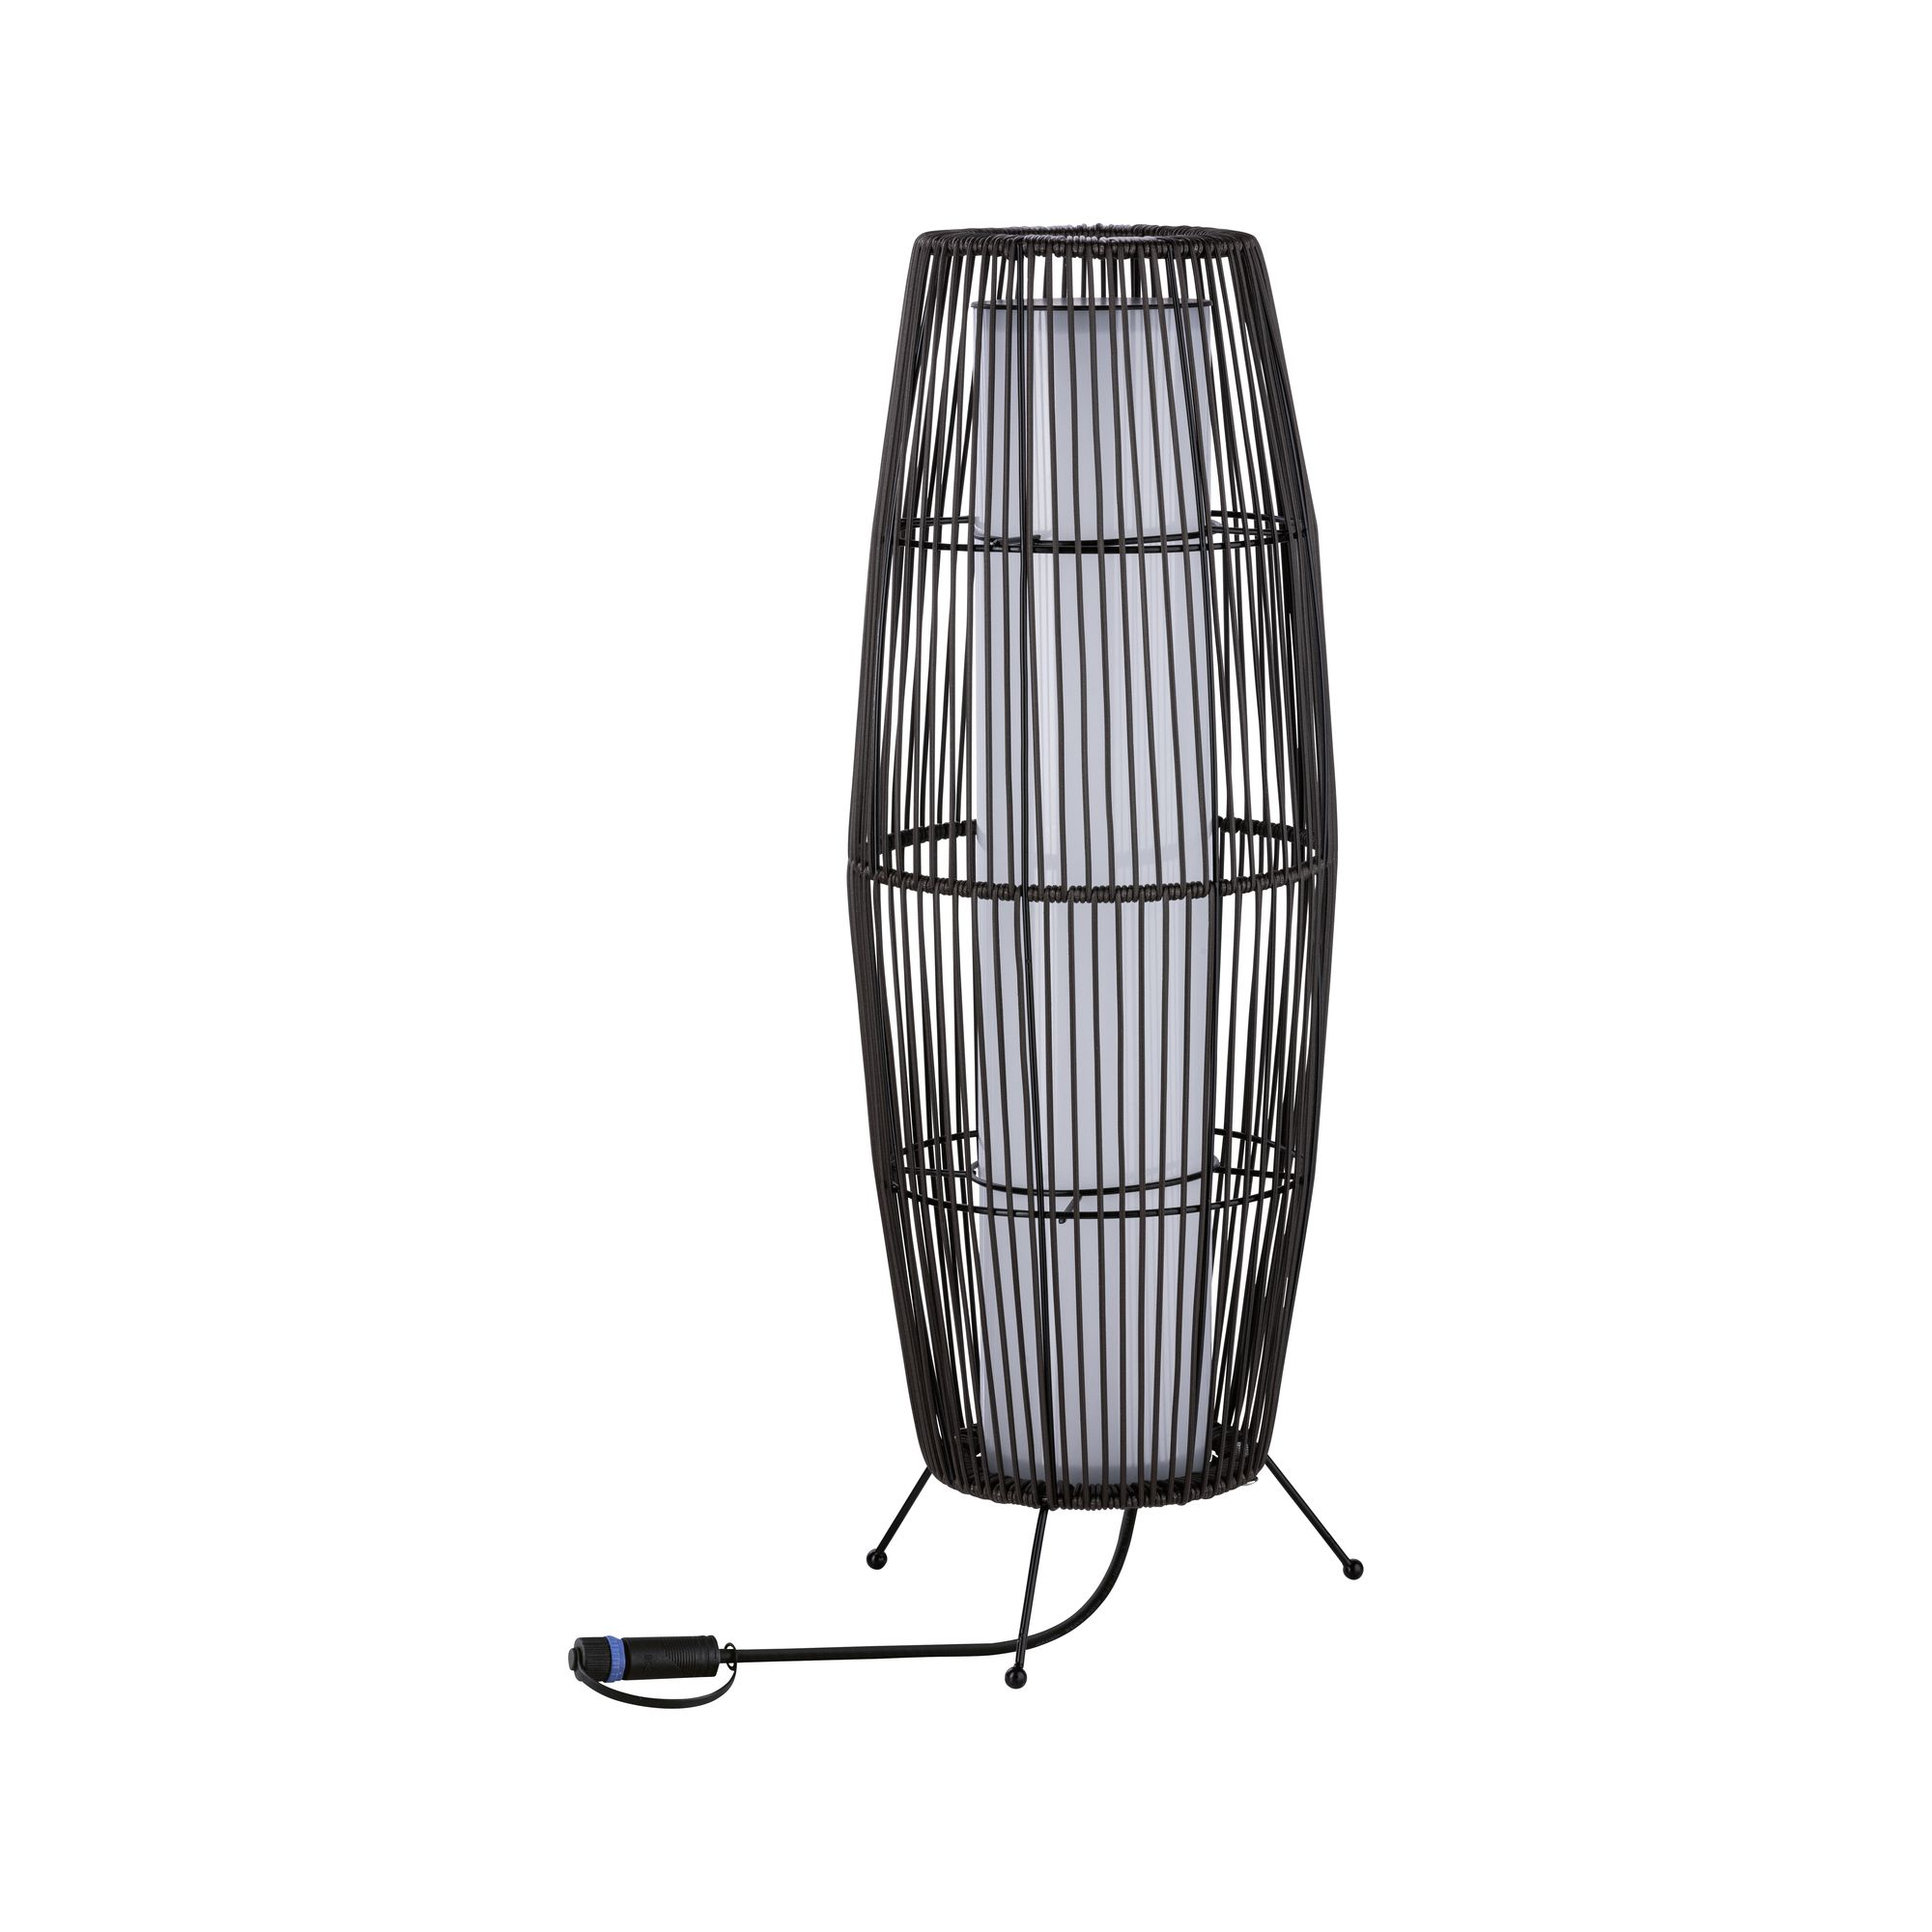 Rattanleuchte 'Plug & Shine Basket' 8 W, 60 cm + product picture